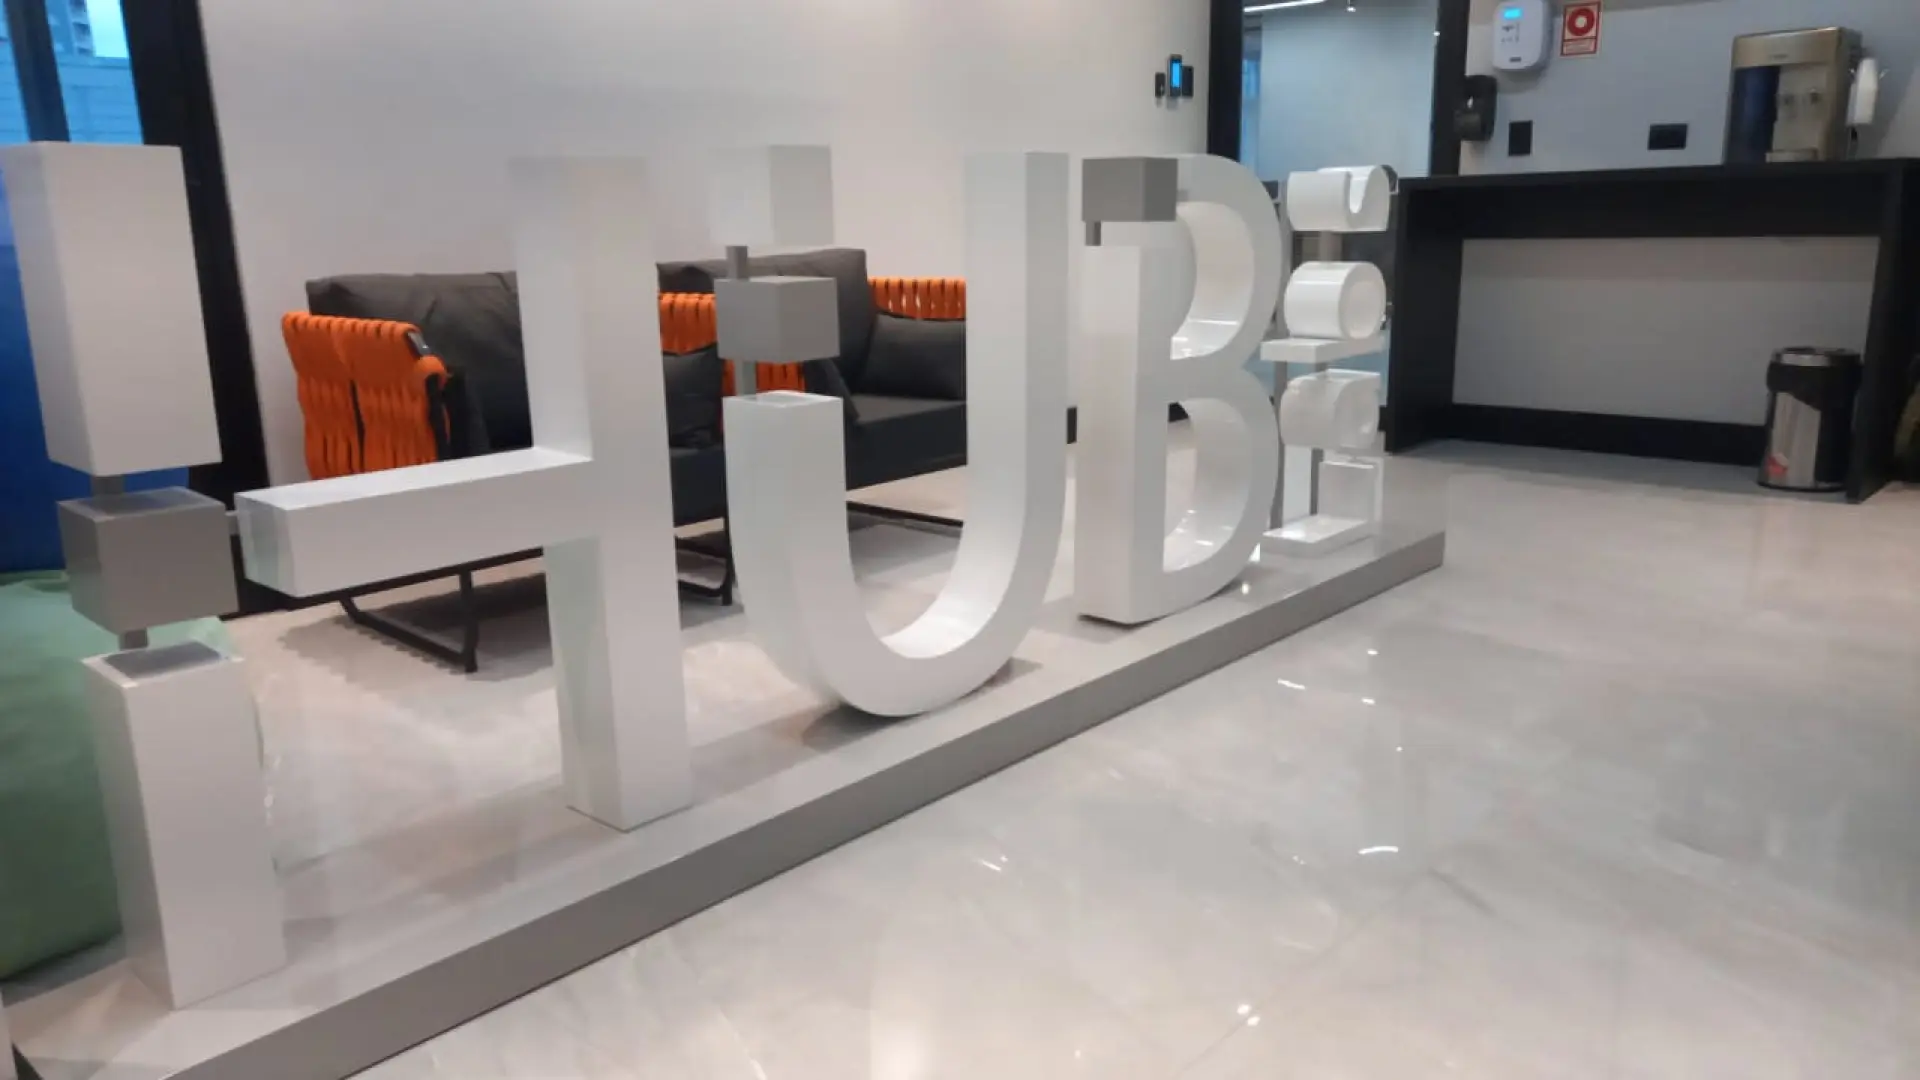 Treeunfe inaugura nova sede no Hub Labs, fortalecendo sua presença no mercado de tecnologia